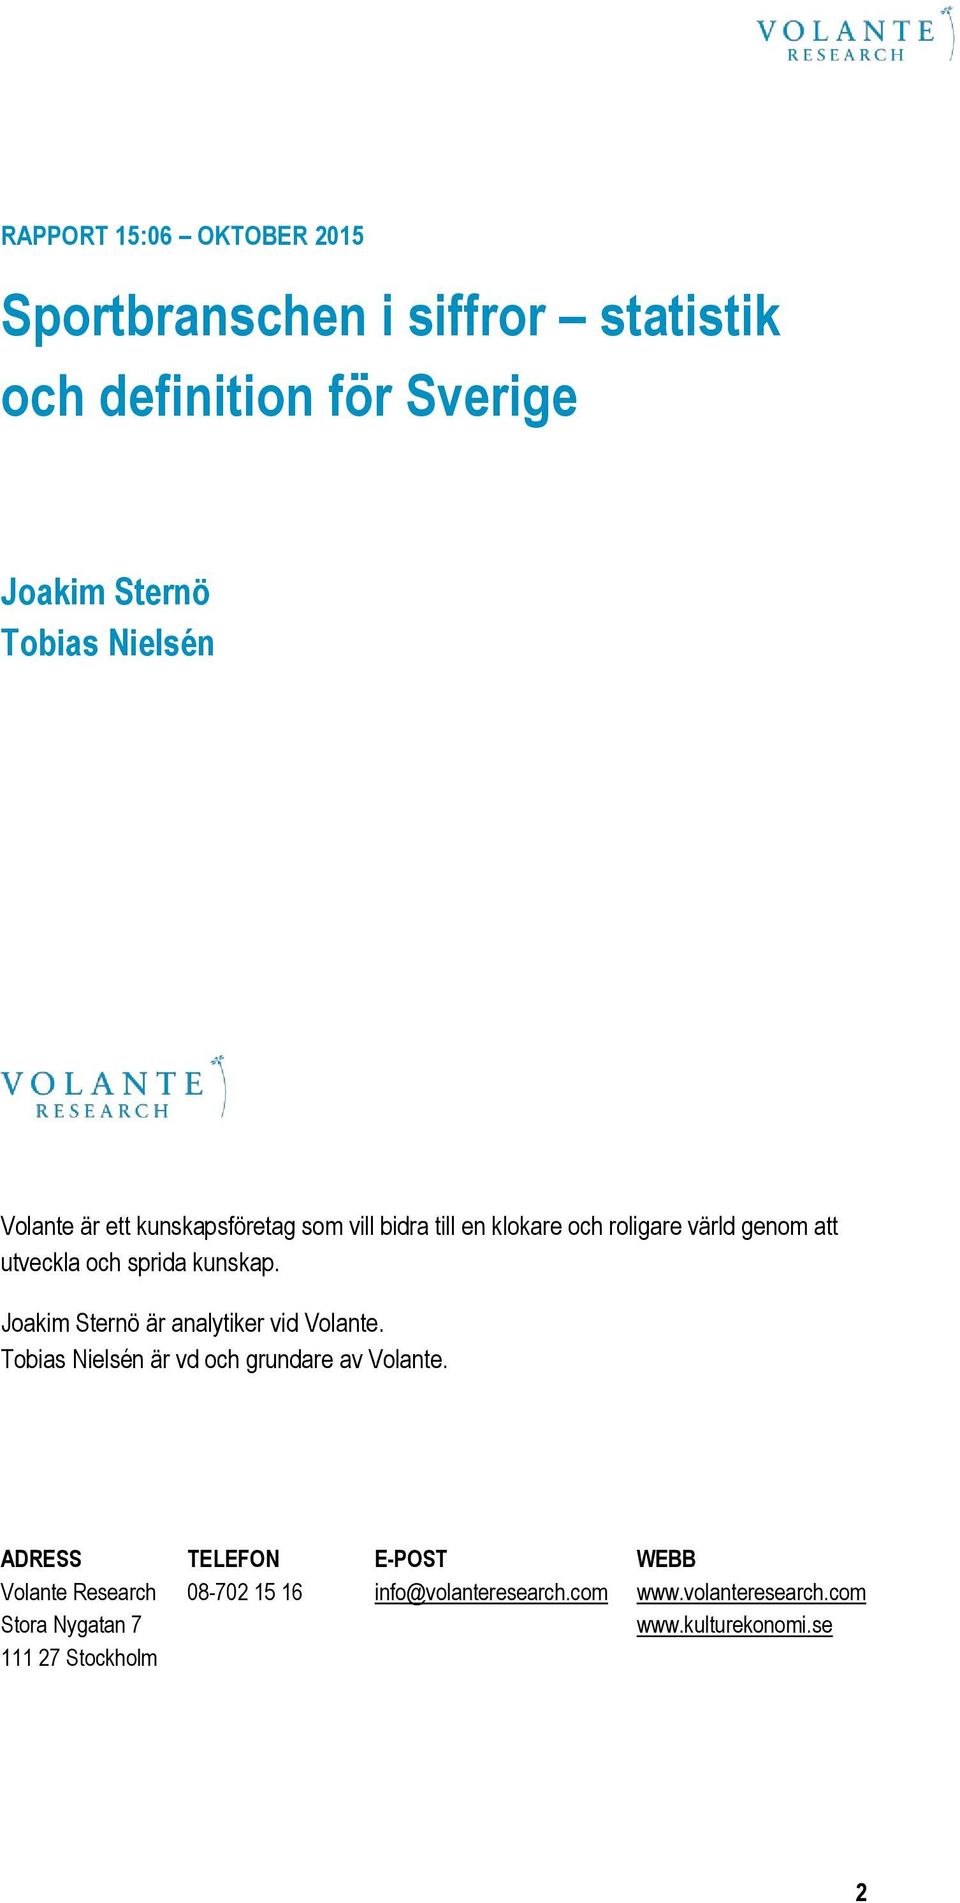 Joakim Sternö är analytiker vid Volante. Tobias Nielsén är vd och grundare av Volante.